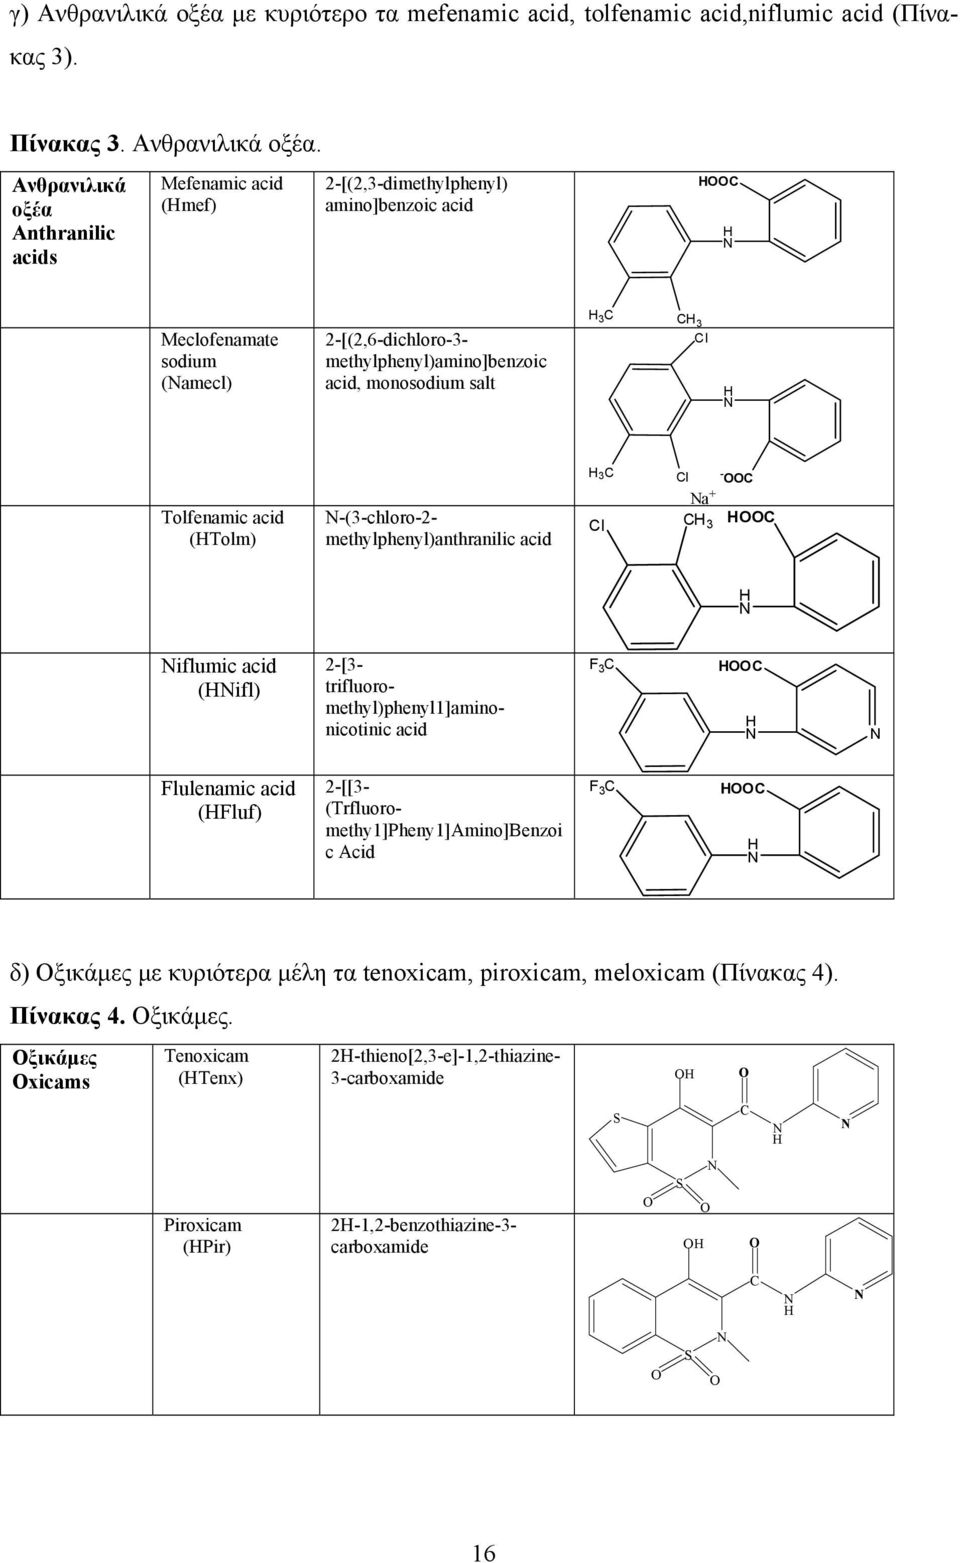 Ανθρανιλικά οξέα Anthranilic acids Mefenamic acid (Hmef) 2-[(2,3-dimethylphenyl) amino]benzoic acid HOOC H N Meclofenamate sodium (Namecl) 2-[(2,6-dichloro-3- methylphenyl)amino]benzoic acid,